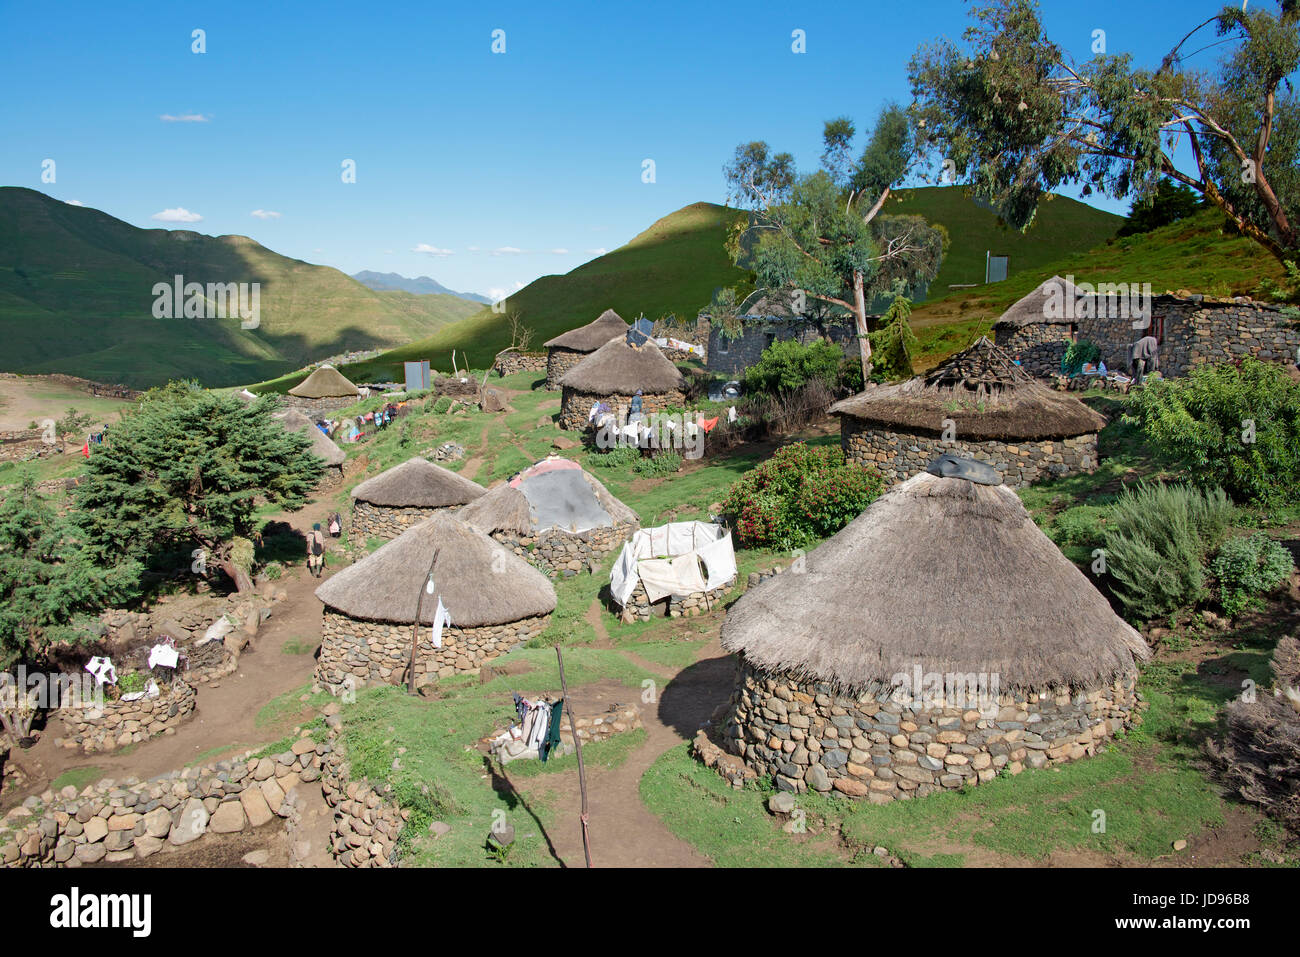 Village rural typique en pierre et les Three rondavels chaume Mohales Hoek District Lesotho Afrique du Sud Banque D'Images